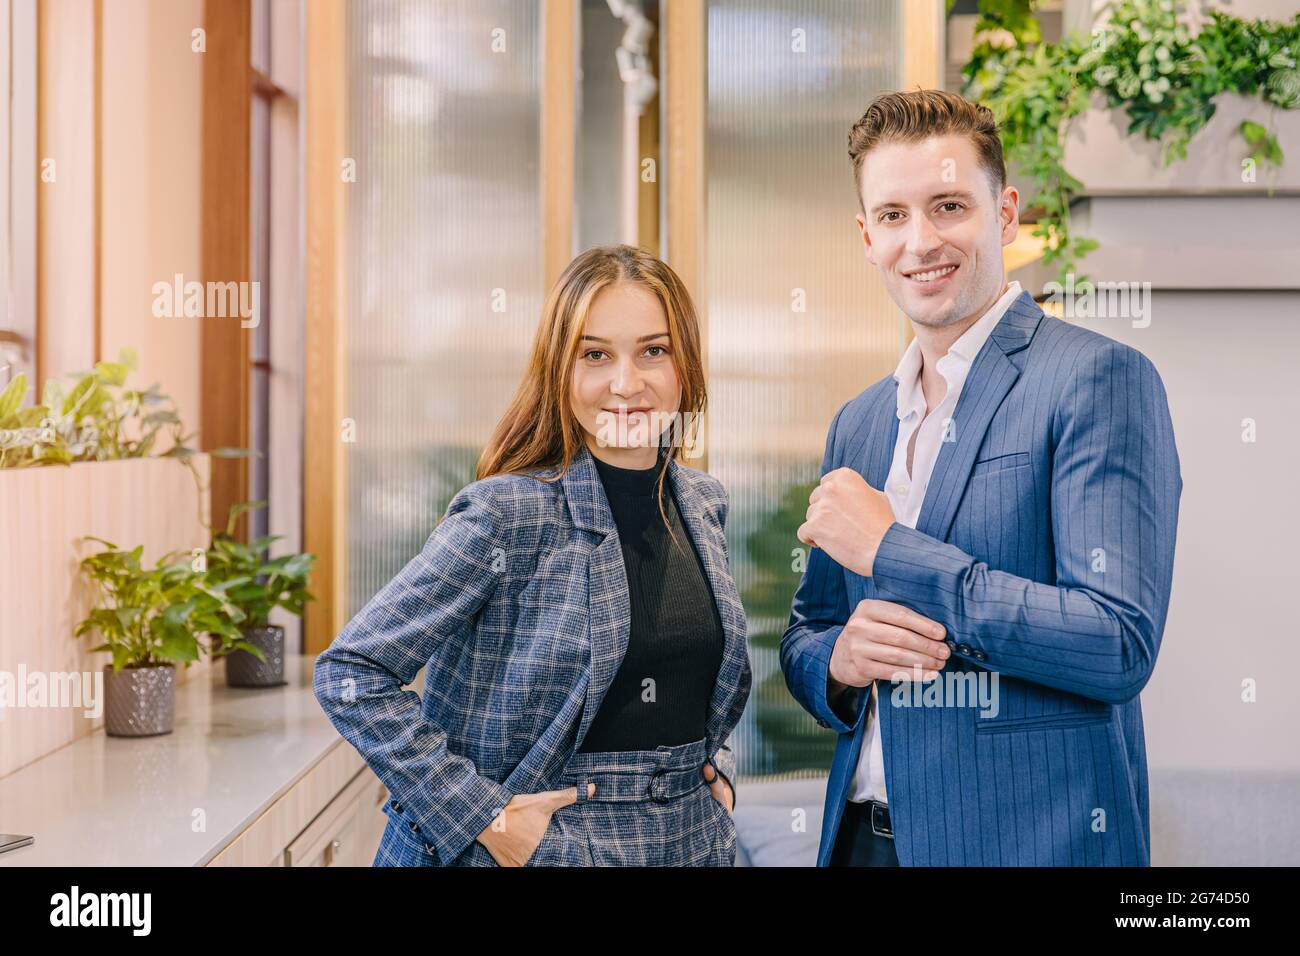 Portrait kaukasischen Geschäftsmann und Frauen stehen zusammen in modernen Büro mit britischen Anzug Mode Kleidung Stil glücklich lächeln. Stockfoto